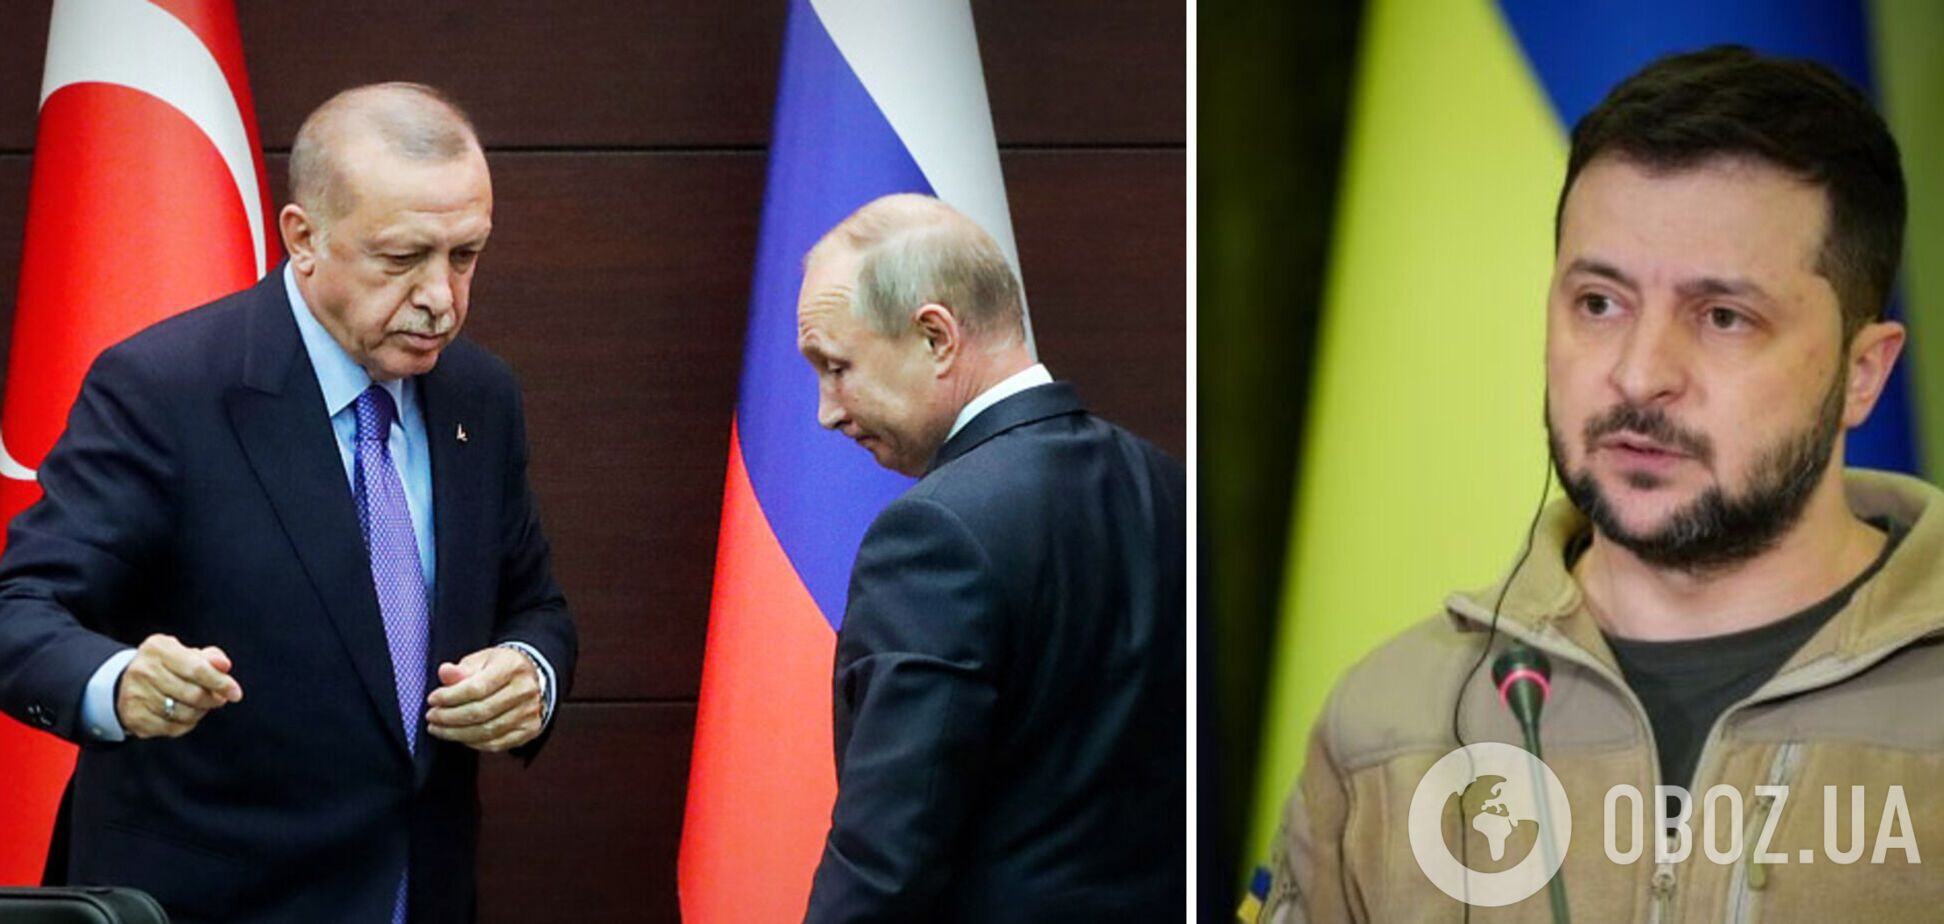 Эрдоган во время визита в Украину предложит Зеленскому организовать встречу с Путиным – СМИ